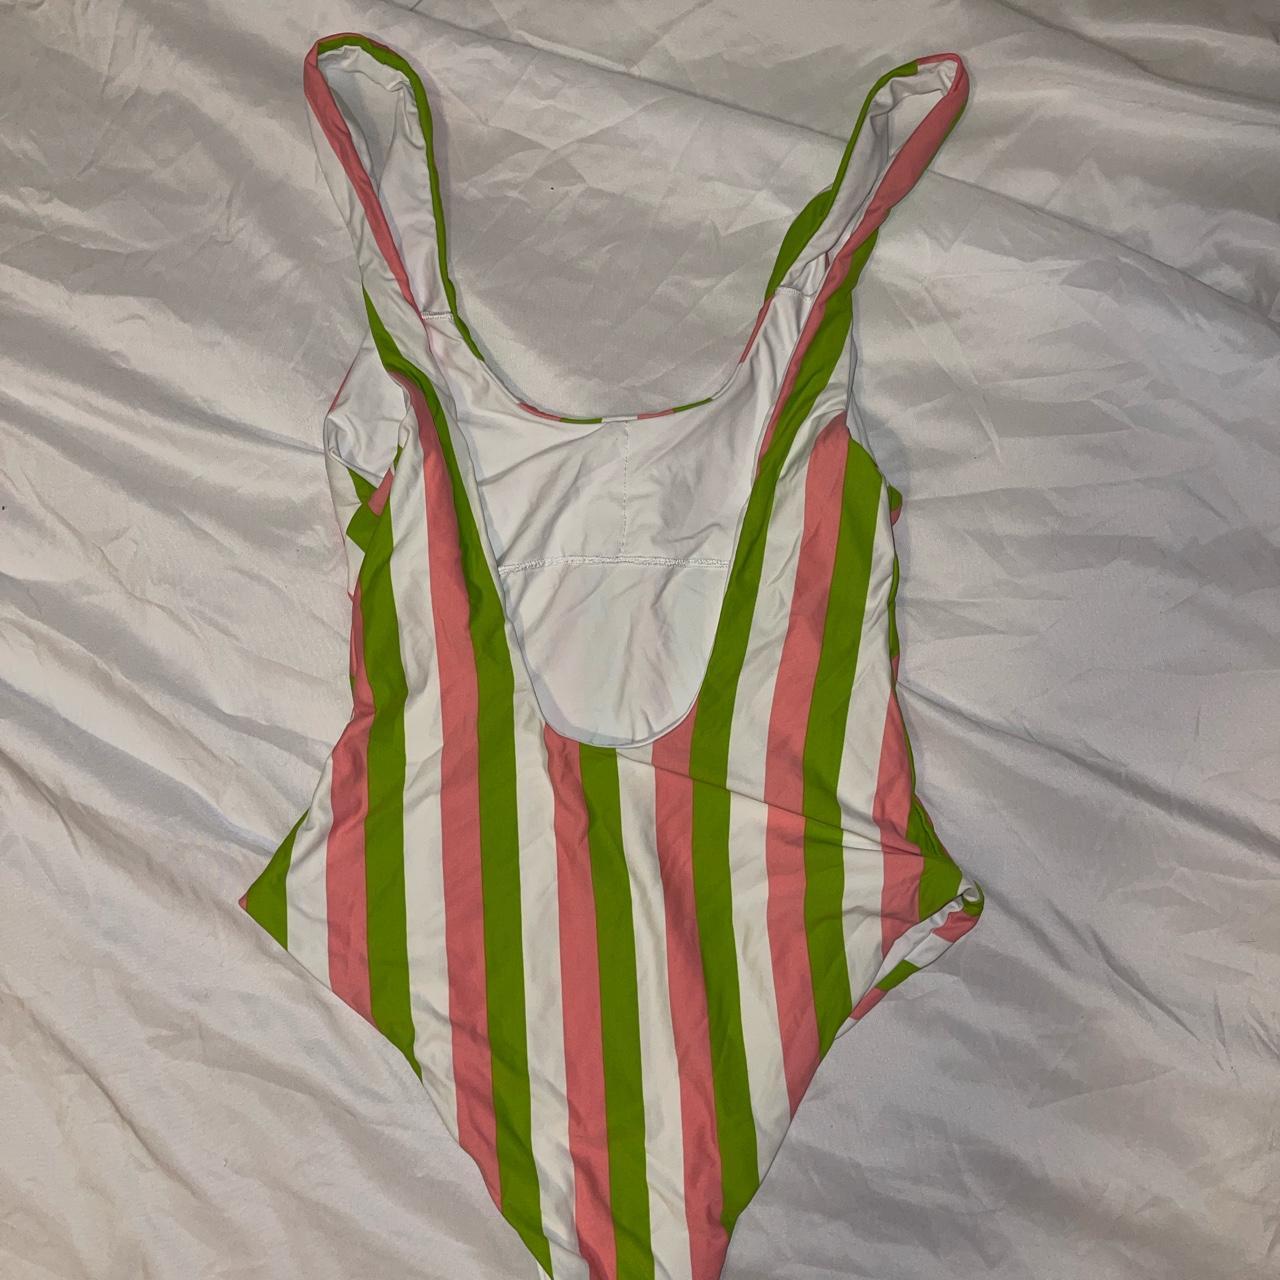 Dippin' Daisy's Women's Multi Swimsuit-one-piece | Depop